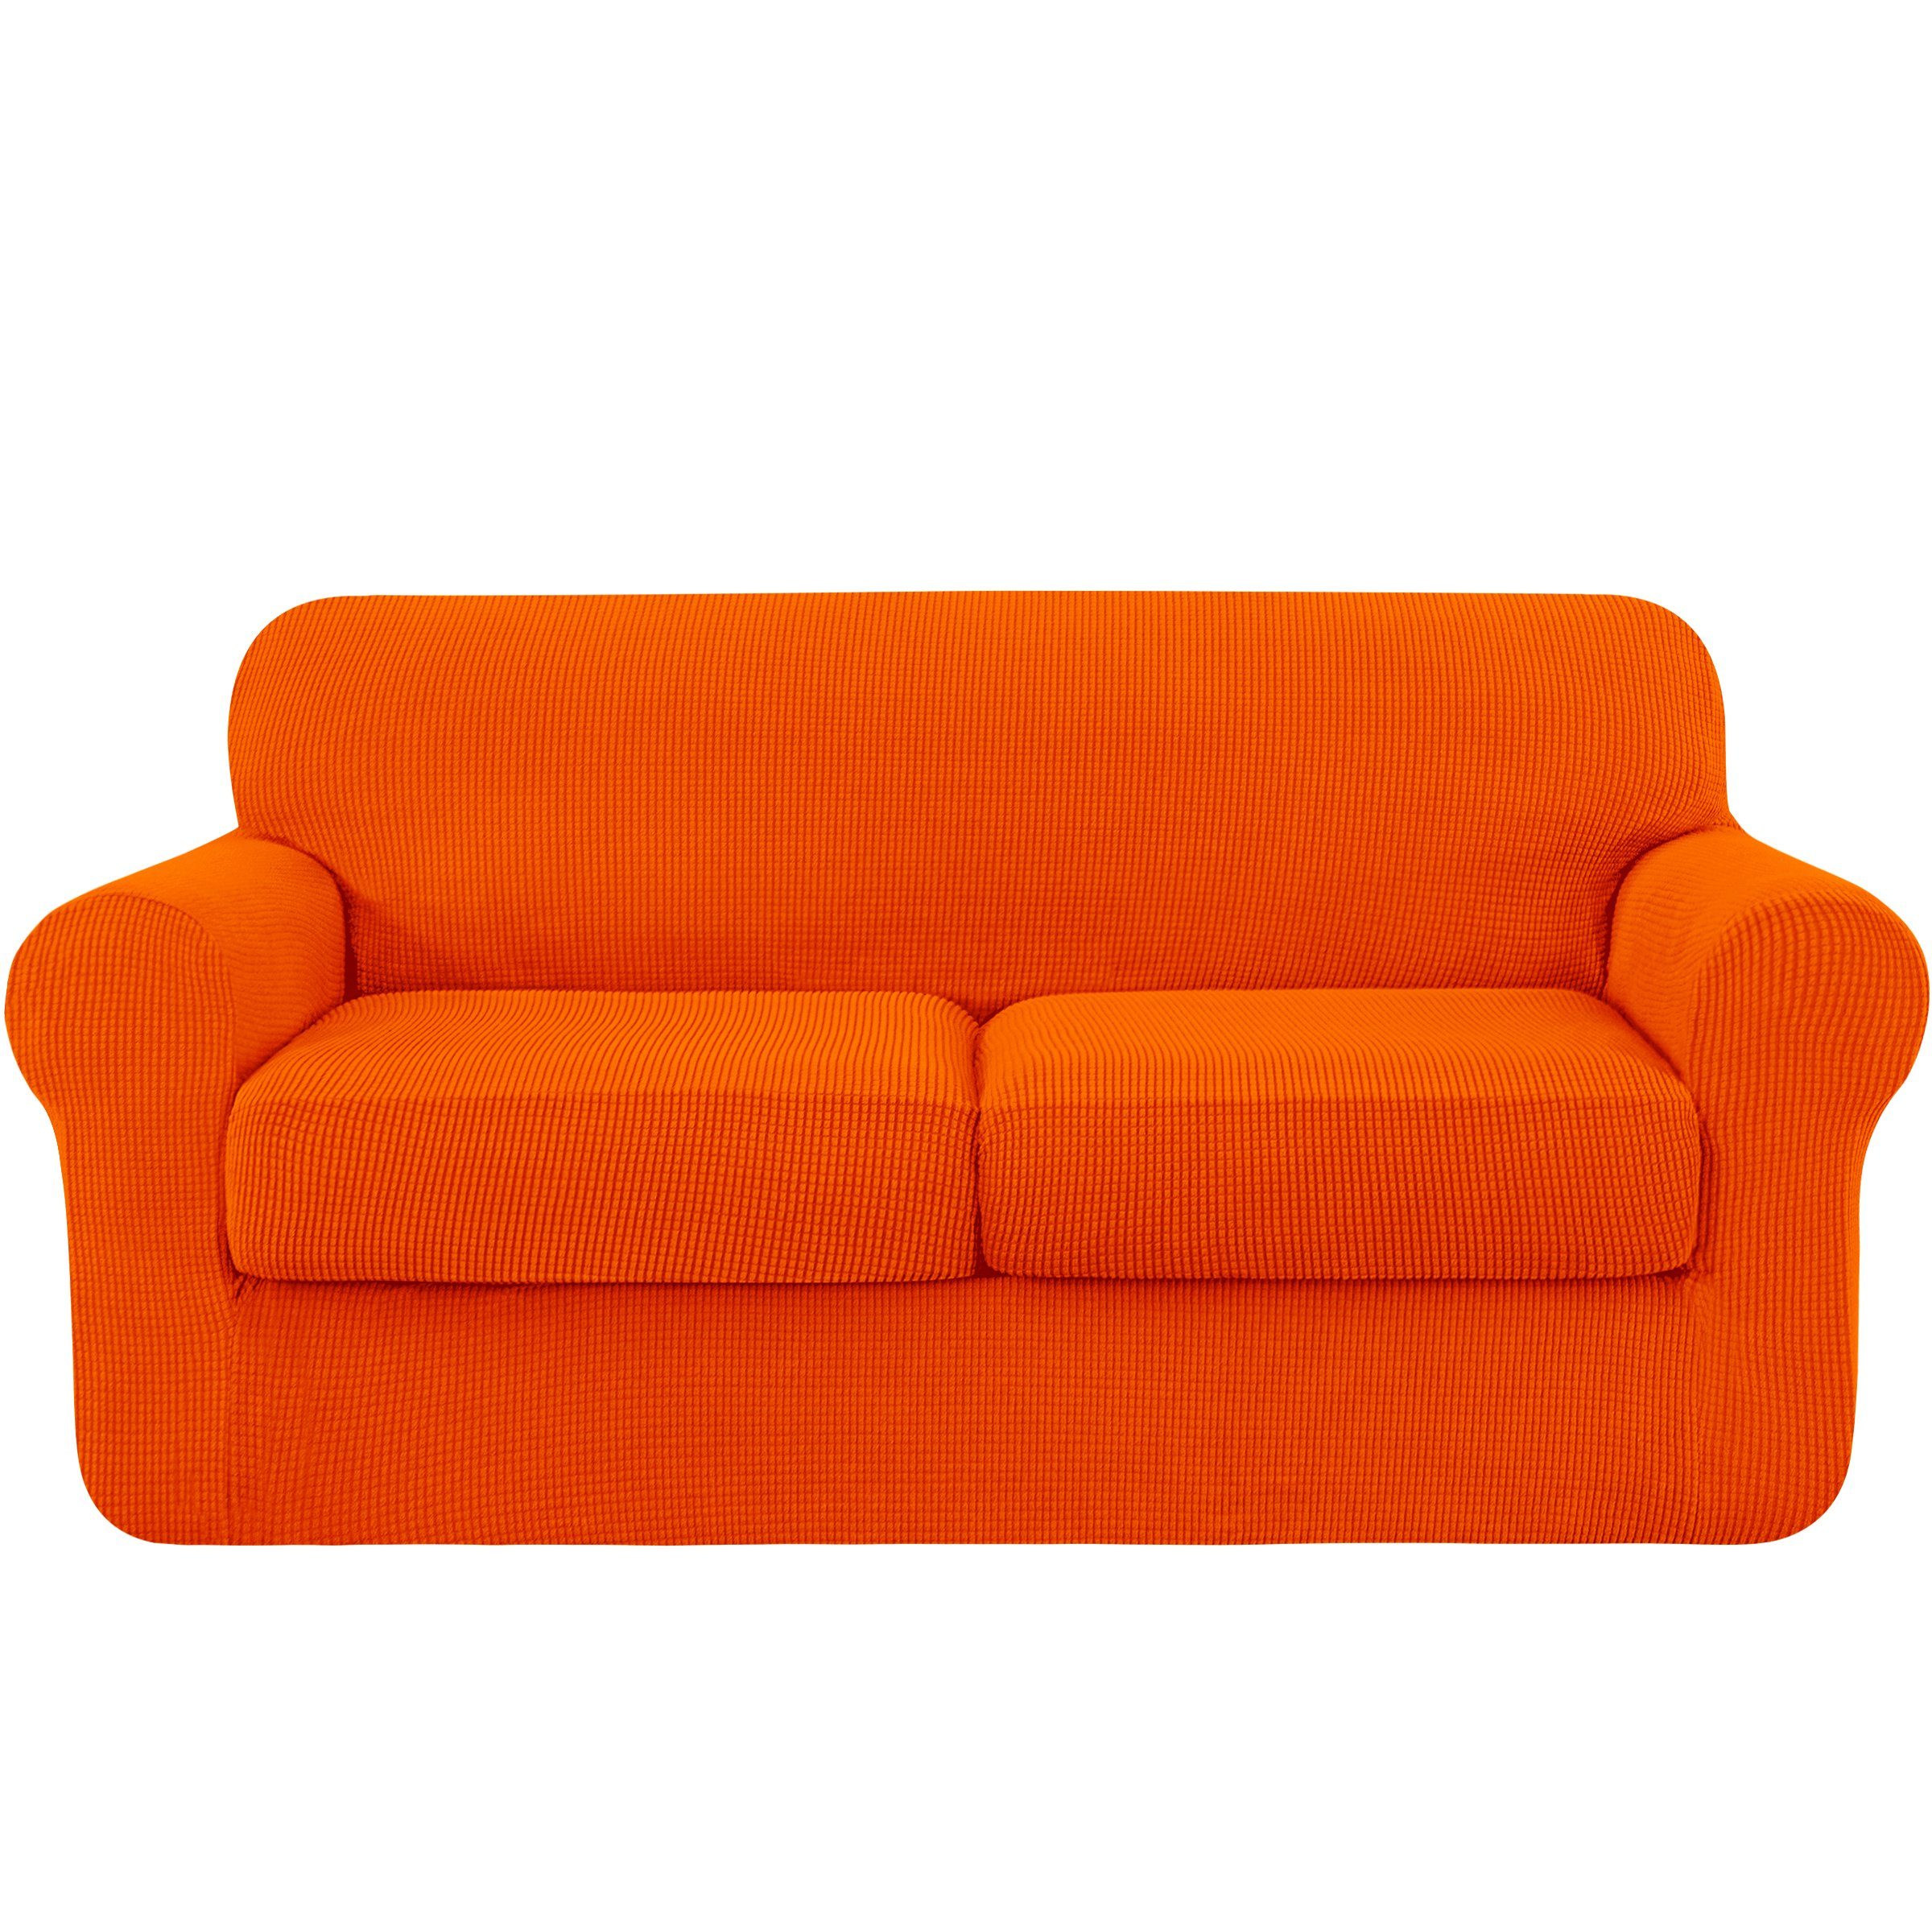 Sofahusse 2/3 Sitzer Spandex Stretch Sofabezug mit separaten Sofakissenbezügen, SUBRTEX, mit leichtem Struktur-Effekt